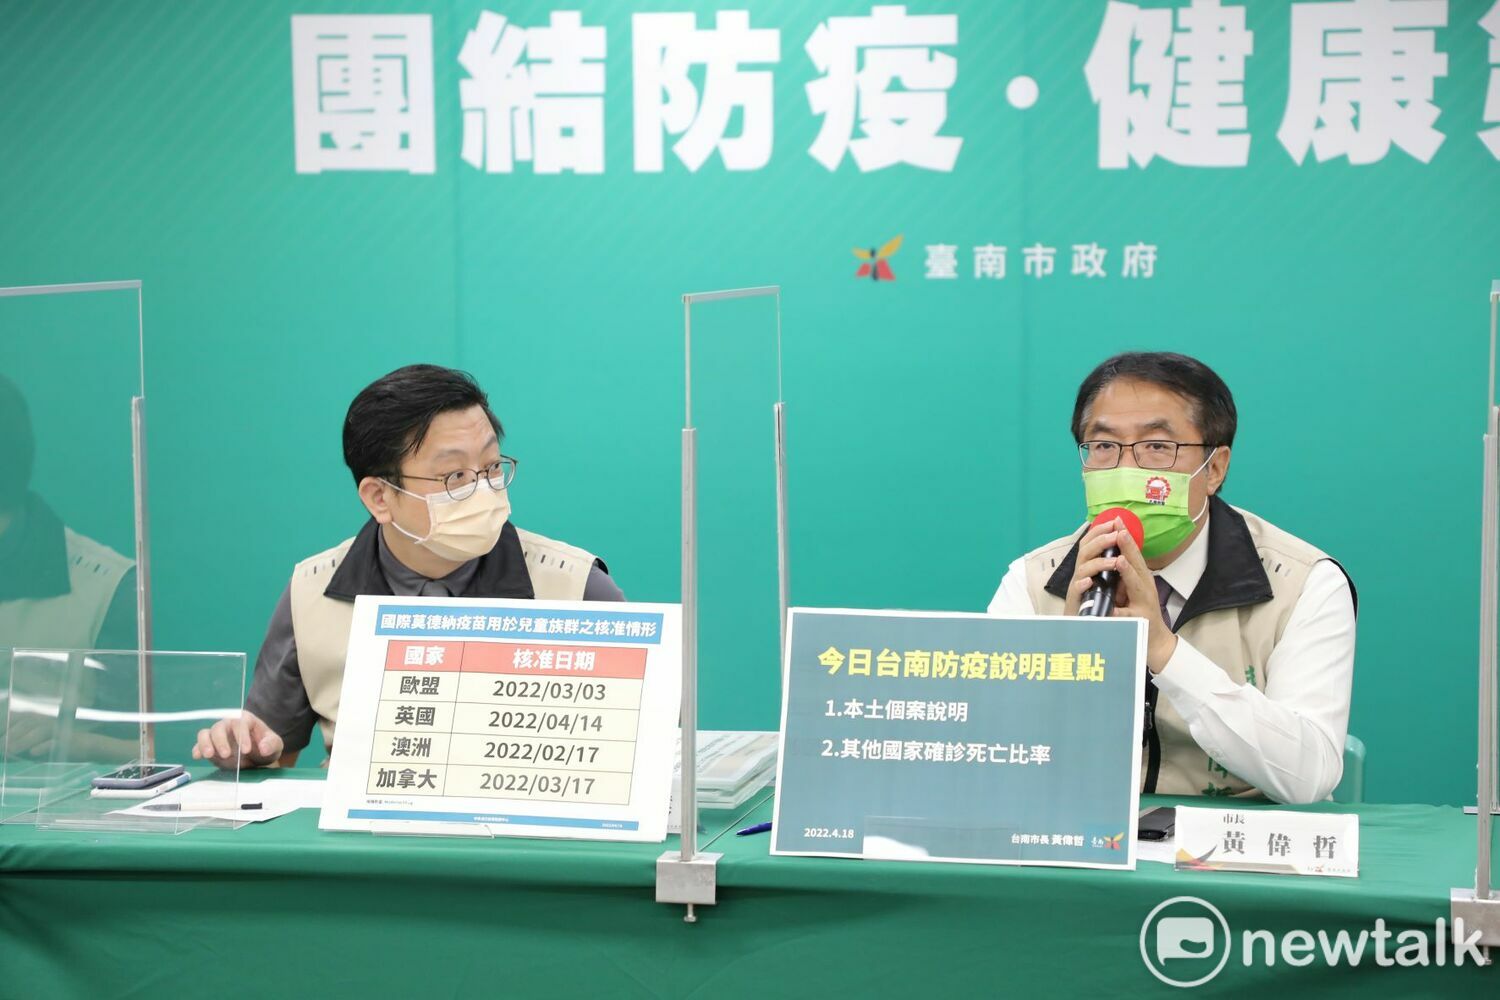 台南增22名COVID-19確診個案  黃偉哲鼓勵6-11歲施打疫苗